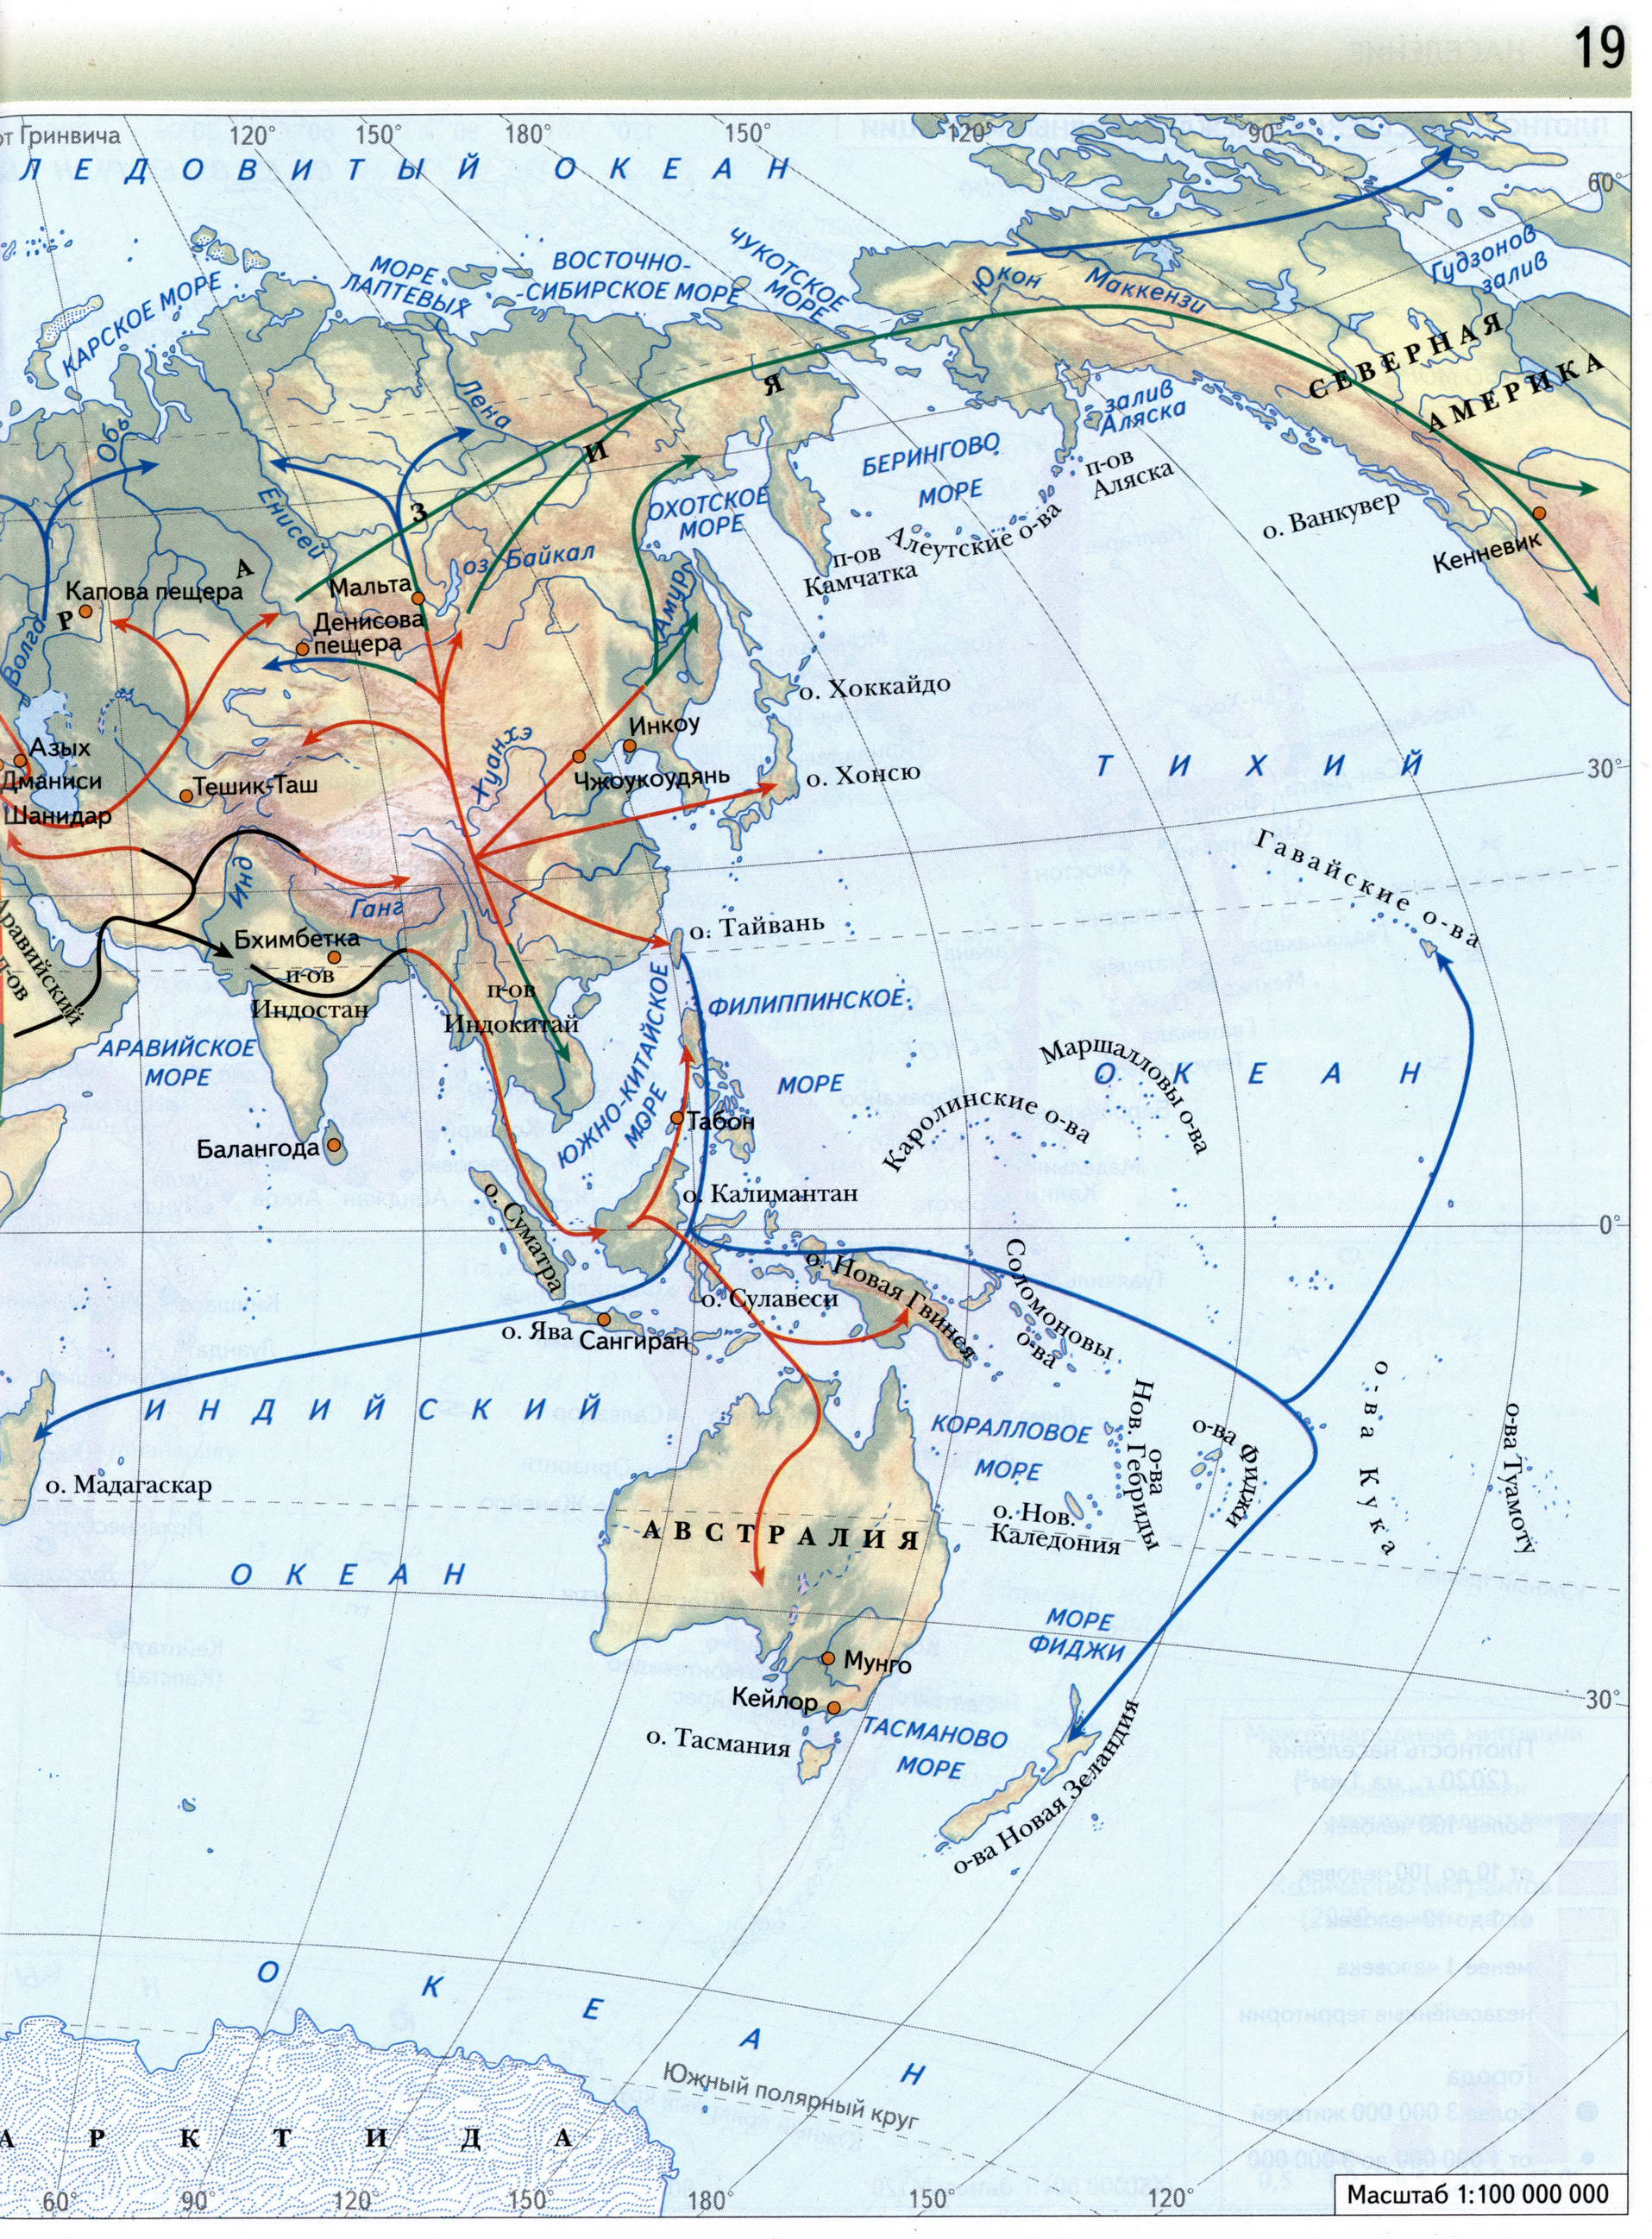 Атлас 7 класс Вентана Граф - карта заселение Земли человеком